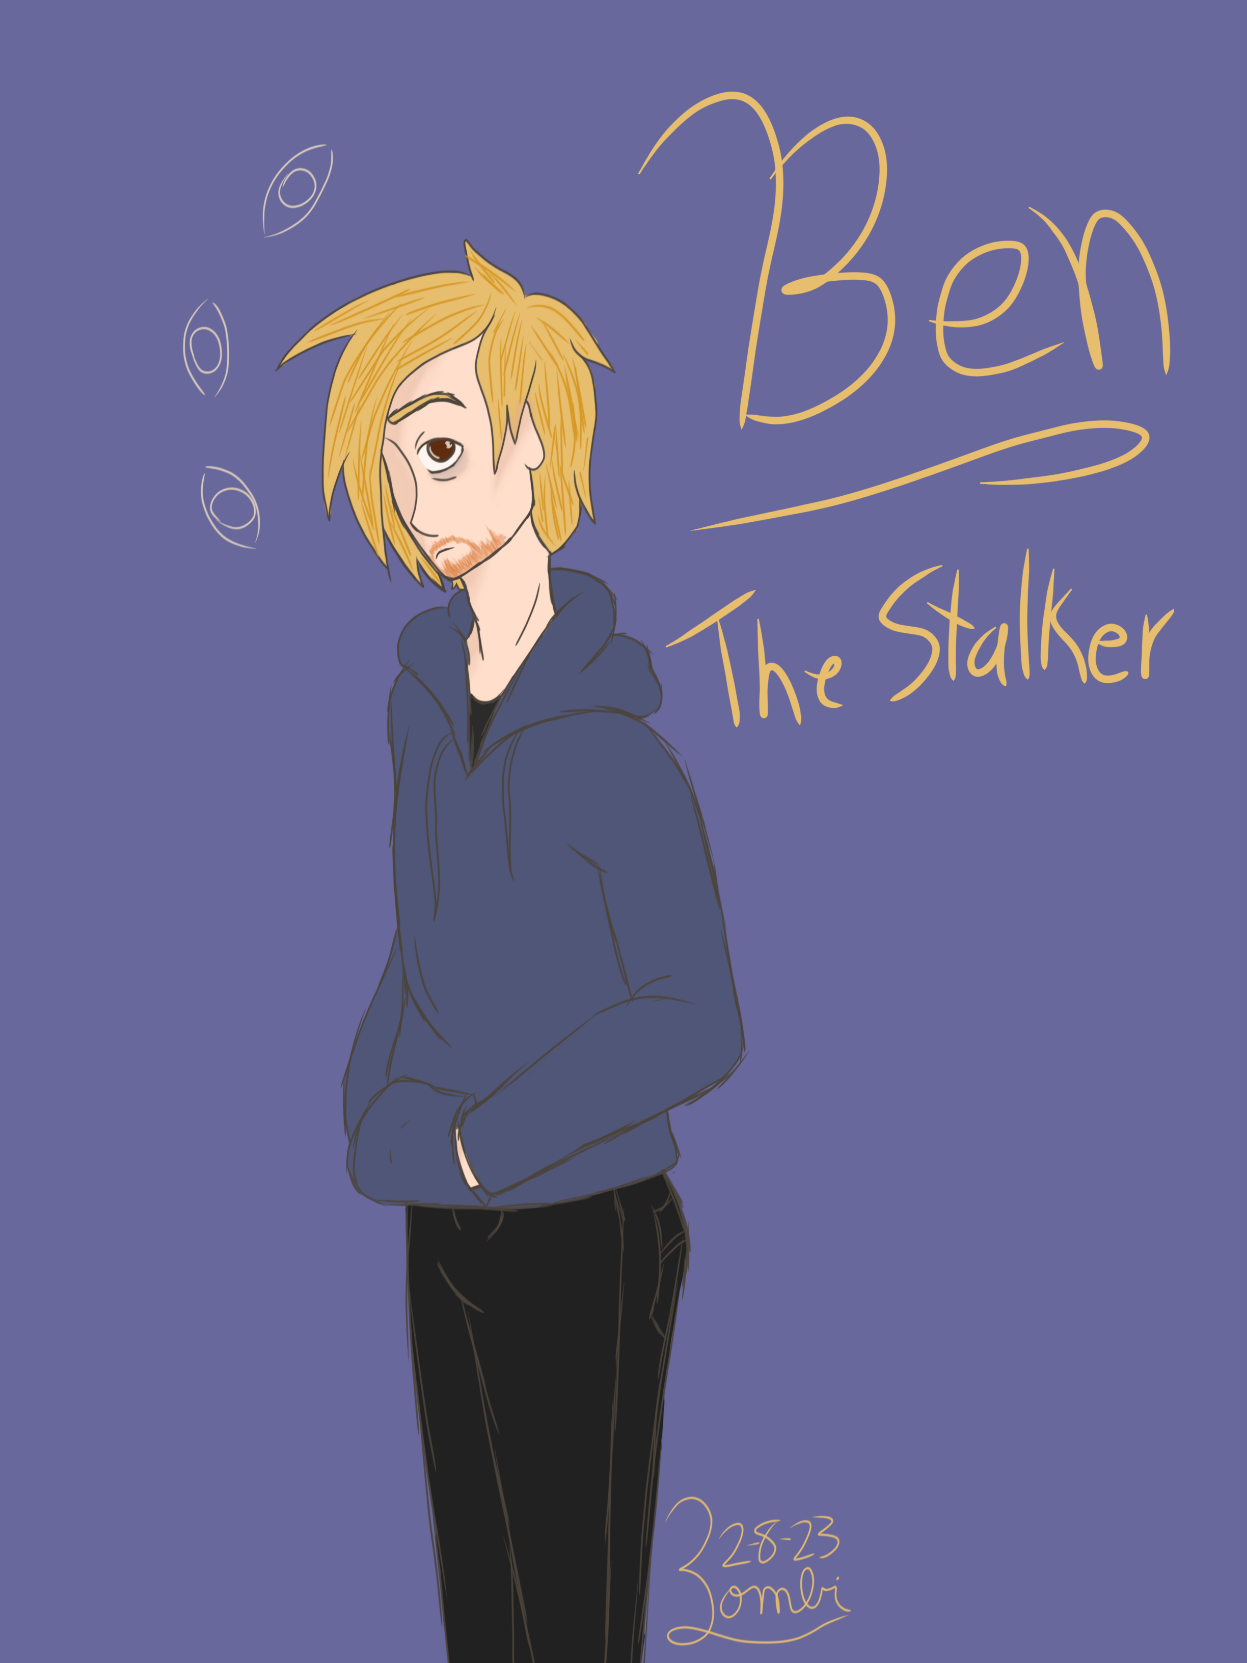 A picture of Ben, Freak4Freak's Stalker love interest.